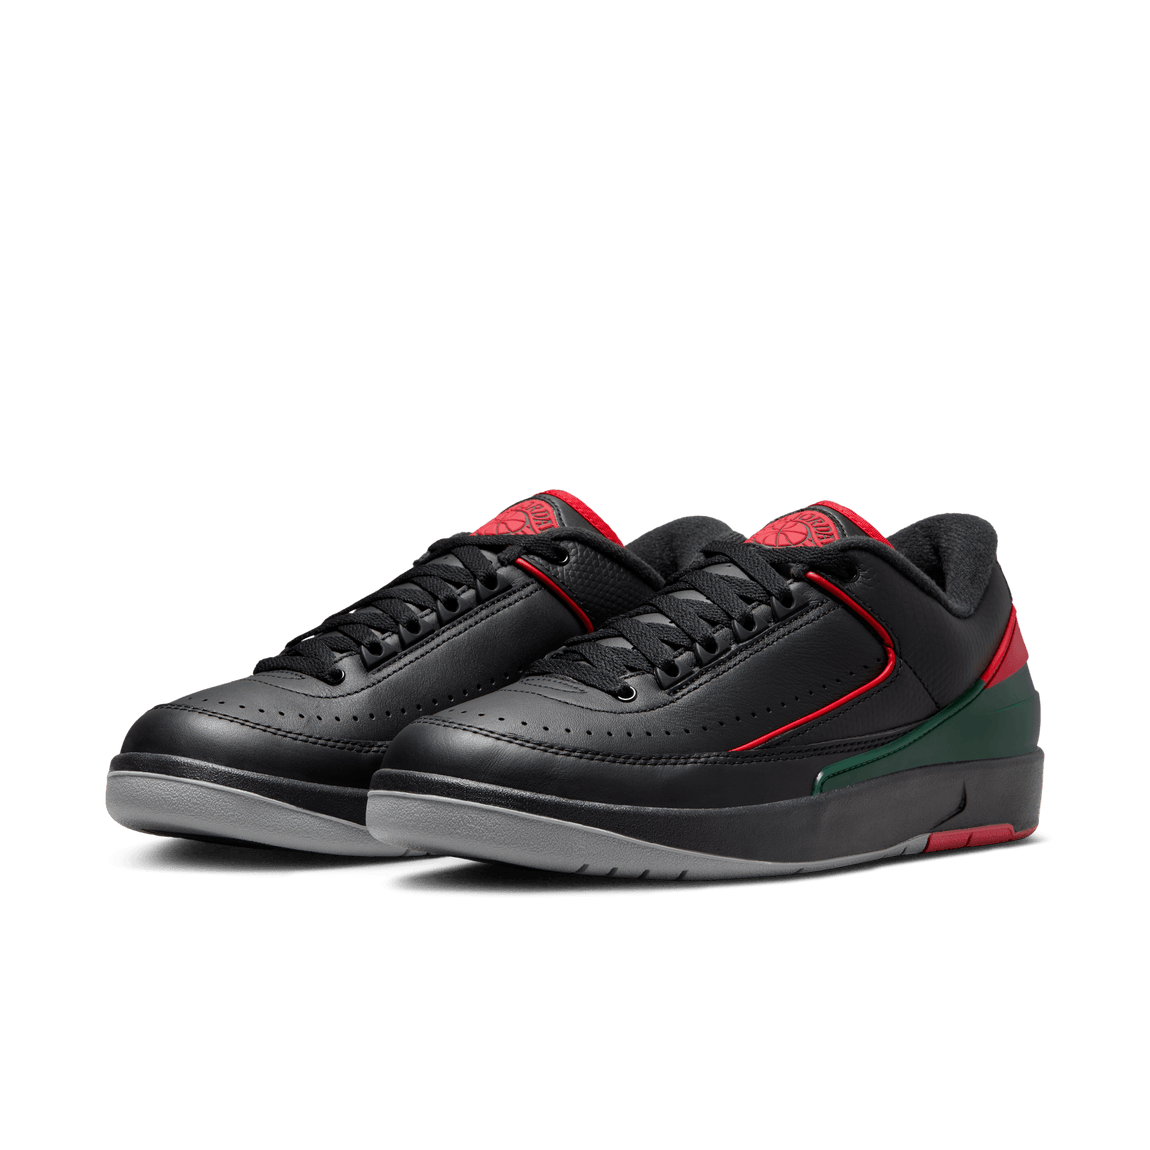 Air Jordan 2 Retro Low (Black/Fire Red-Fir-Cement Grey) - Air Jordan 2 Retro Low (Black/Fire Red-Fir-Cement Grey) - 